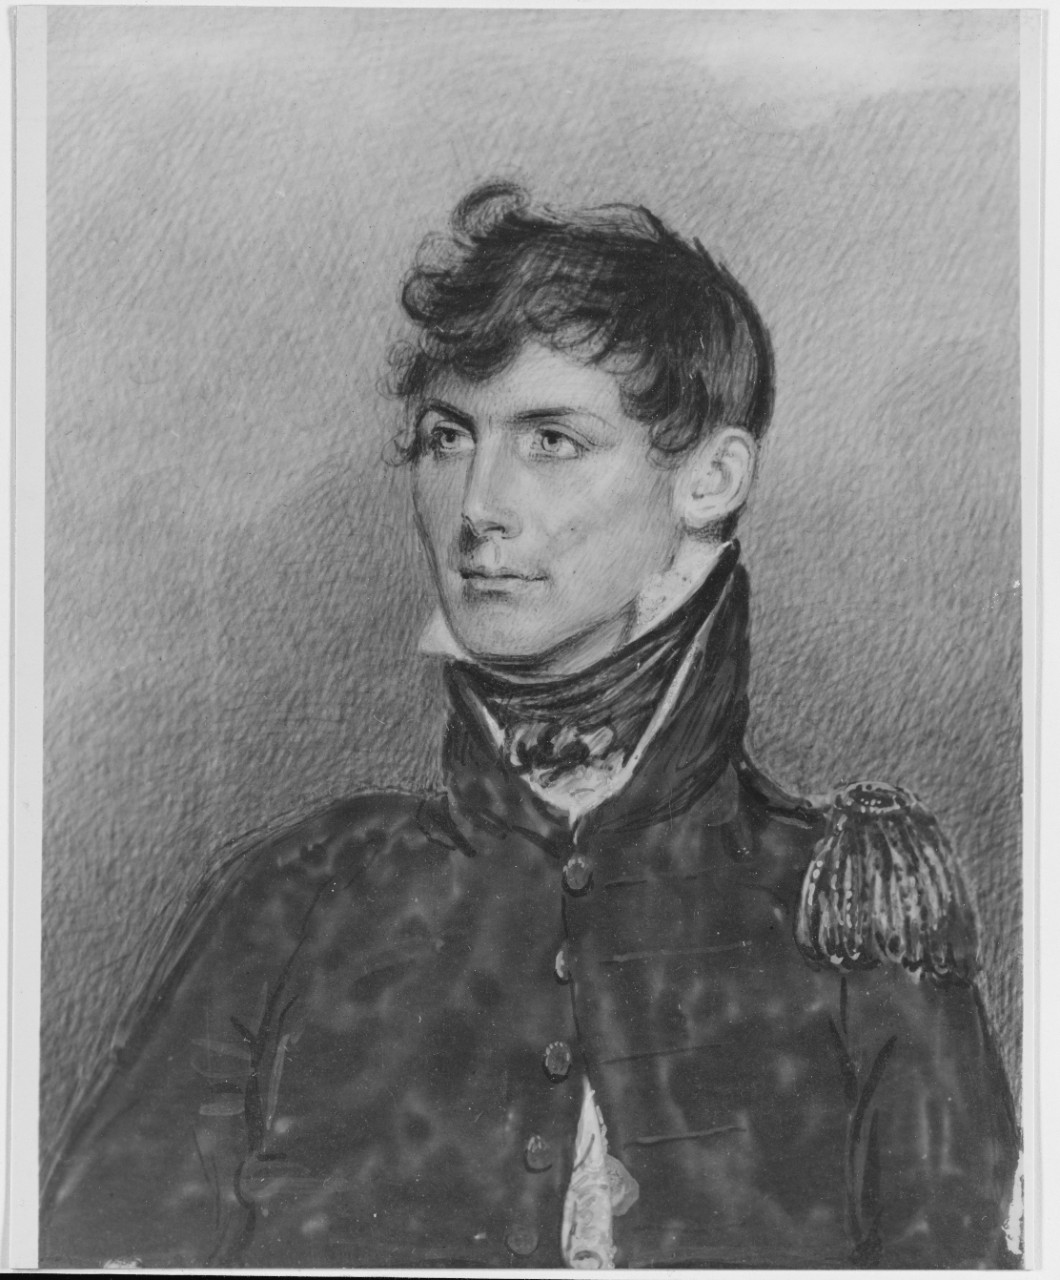 Lieutenant William Lewis, USN